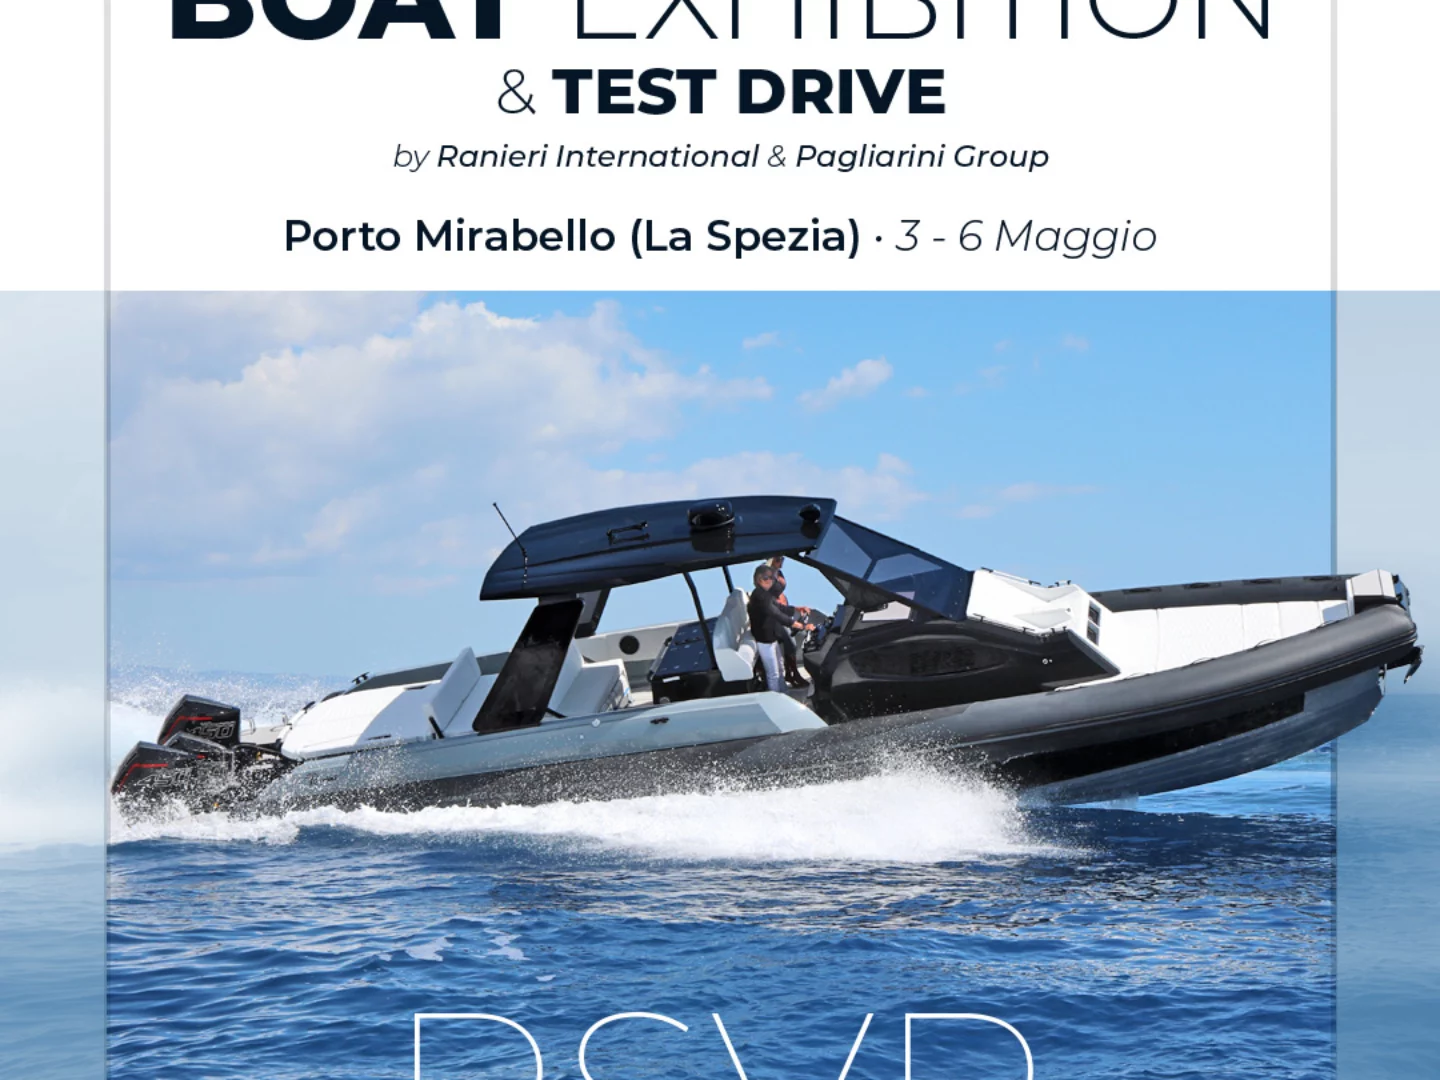 Ranieri International Boat Exhibition dal 3 al 6 maggio al Porto Mirabello di La Spezia